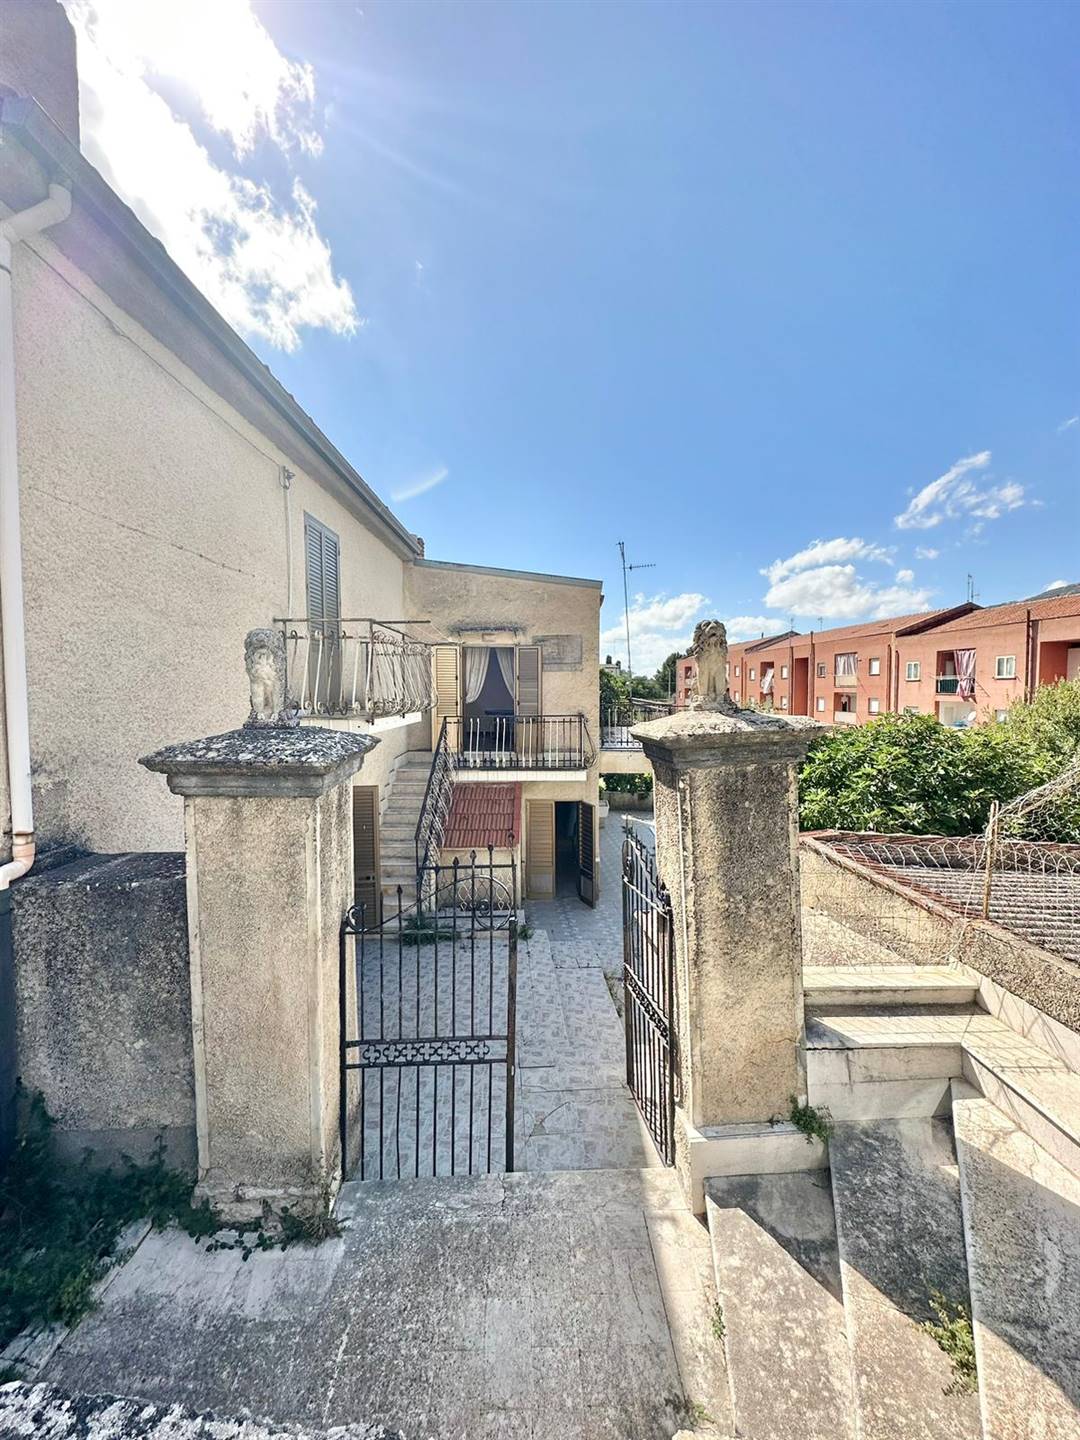 Villa in vendita a Palazzo Adriano, 6 locali, prezzo € 33.000 | PortaleAgenzieImmobiliari.it